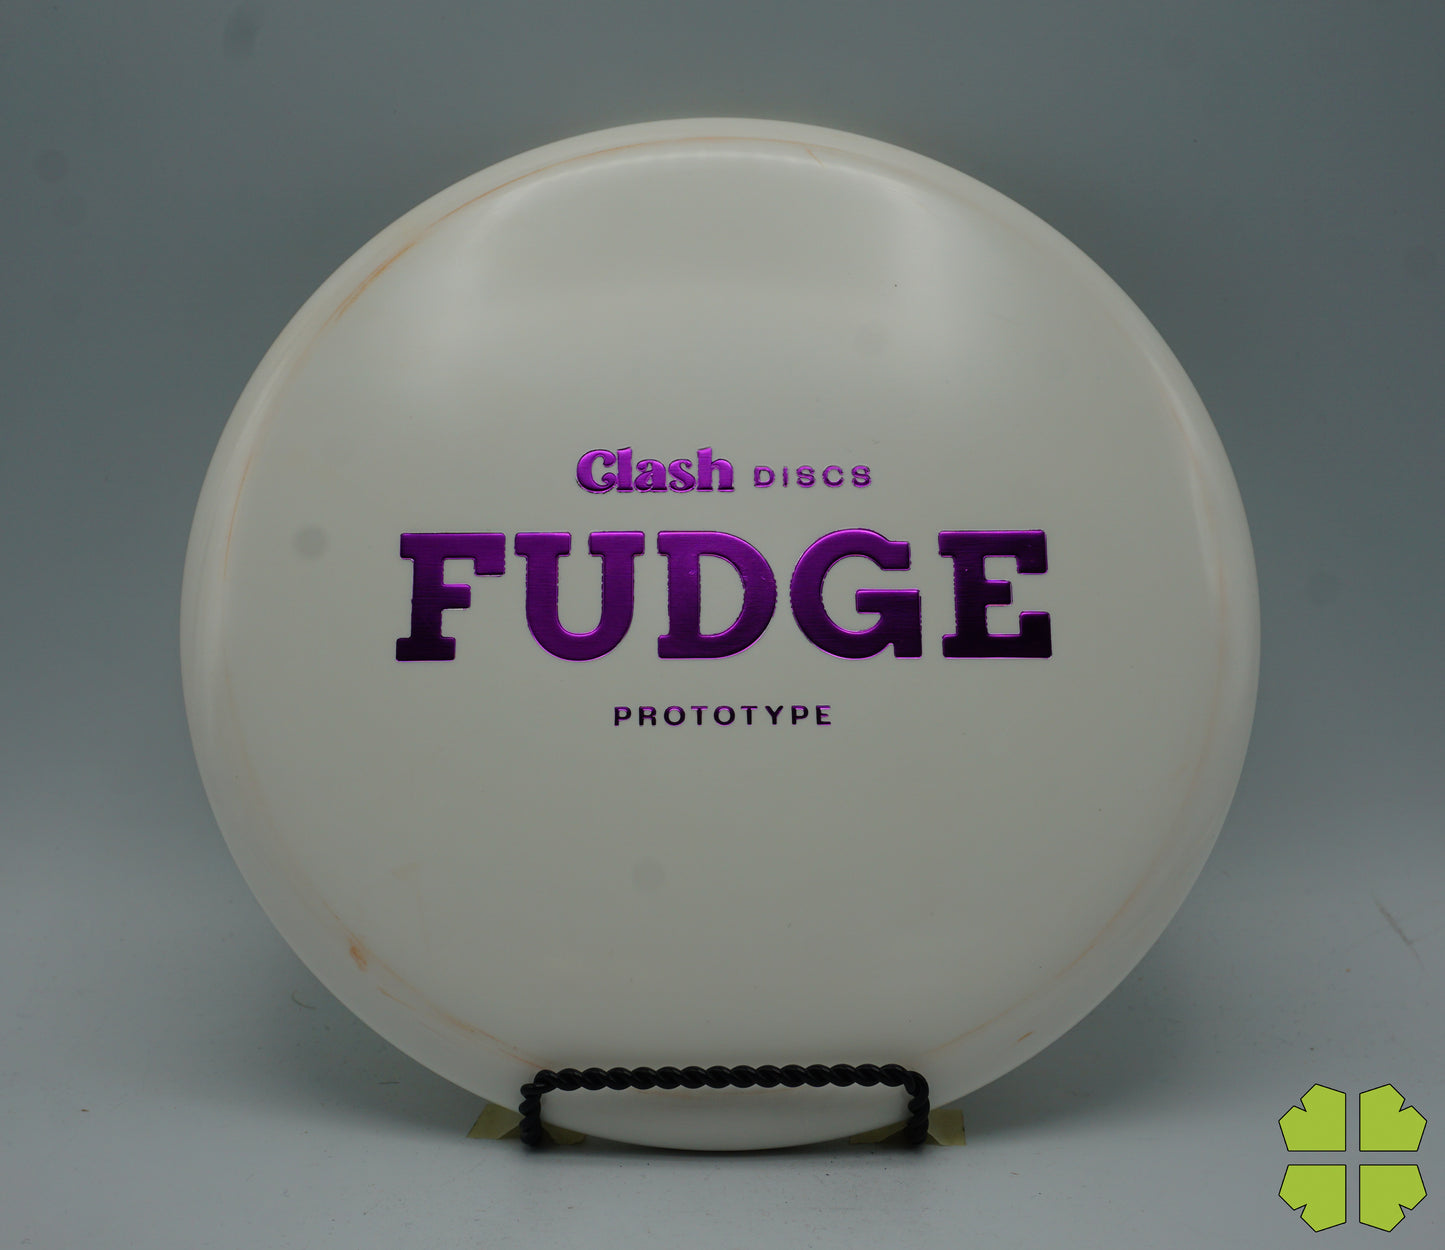 Steady Prototype Fudge